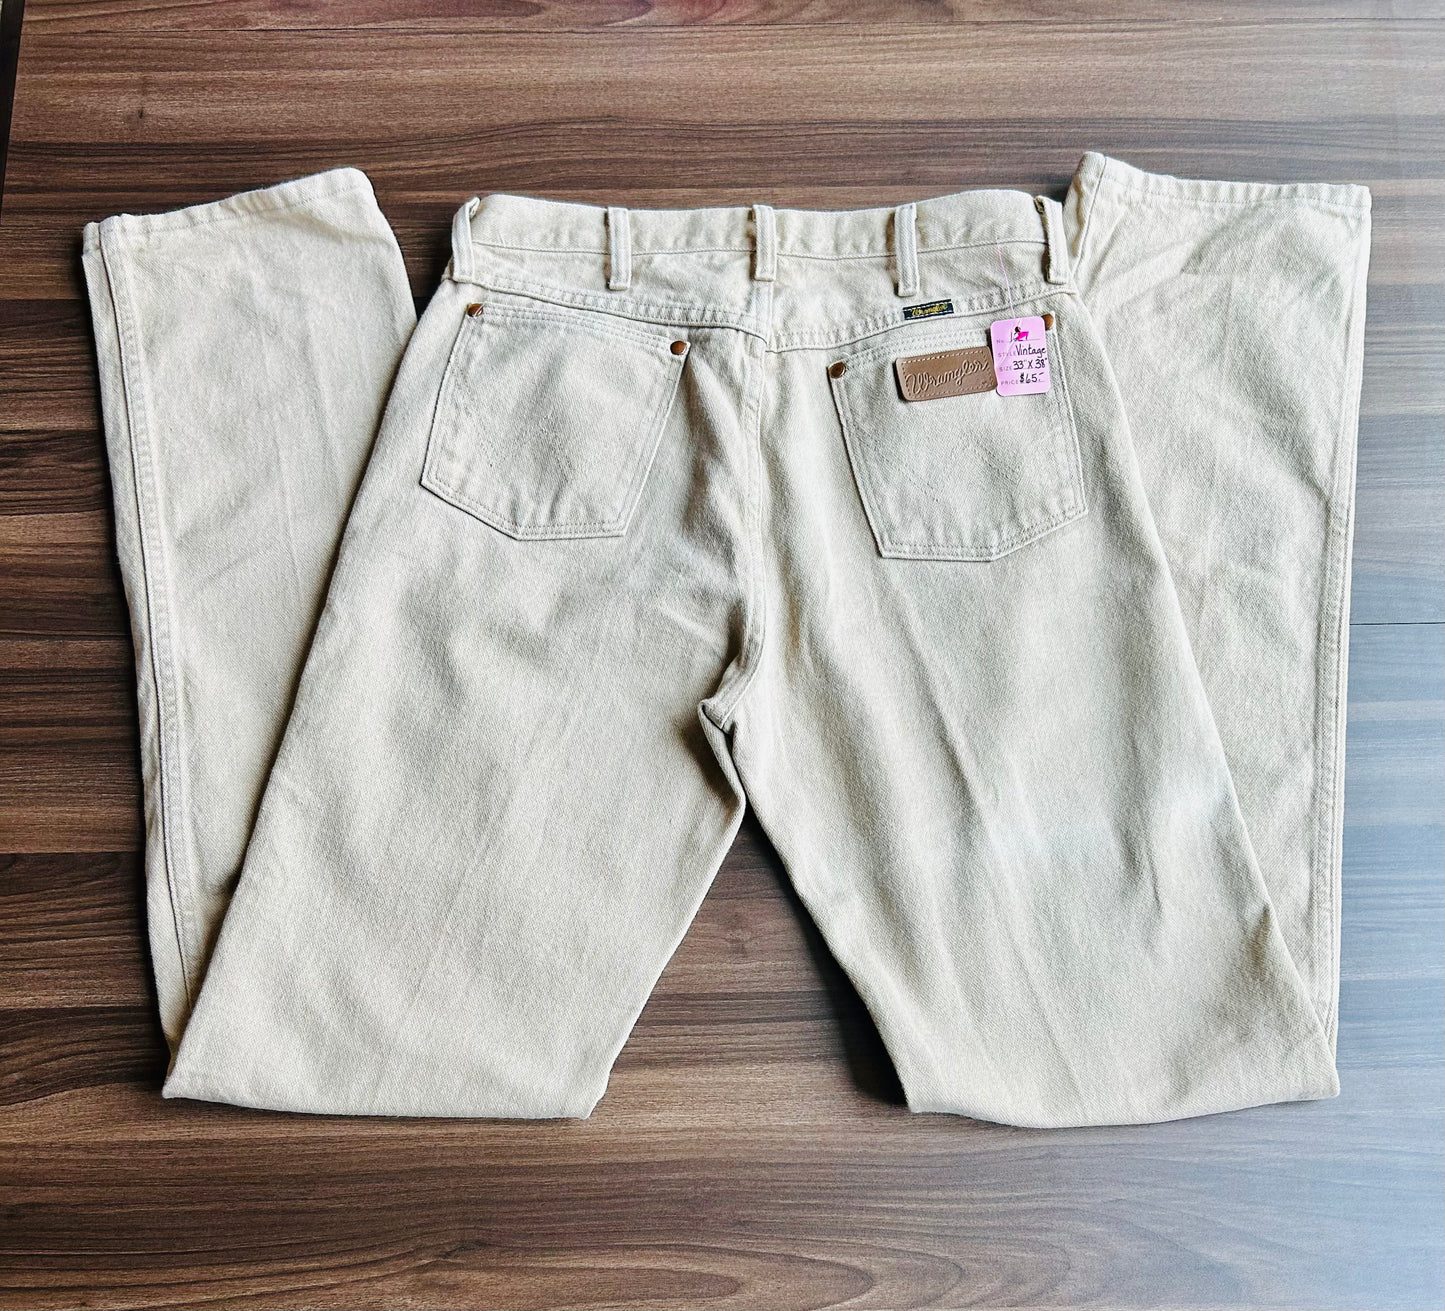 Wrangler Cowboy Cut Tan Jeans Size 34x39